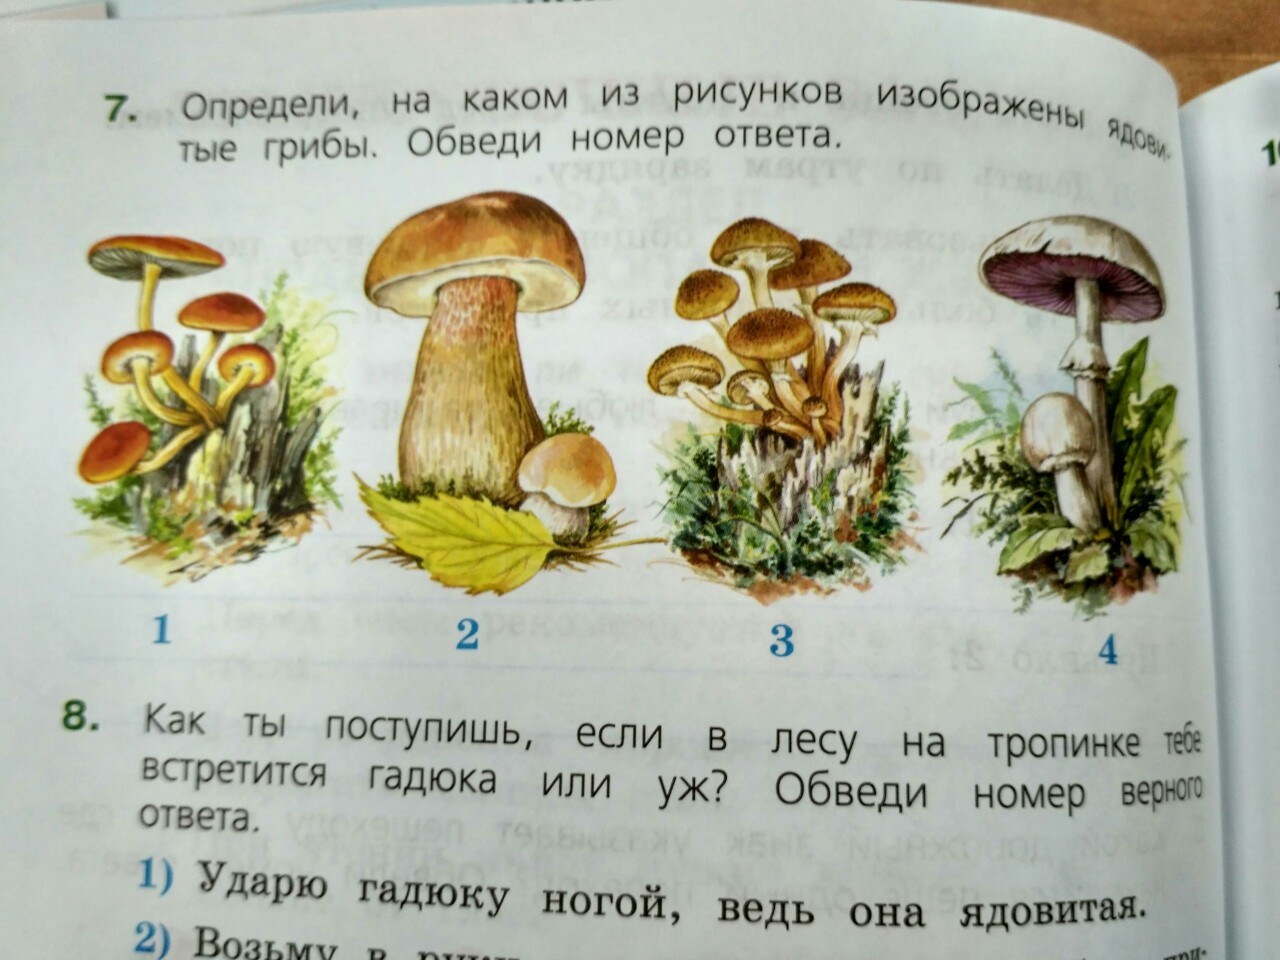 Определи на каком рисунке изображены ядовитые грибы